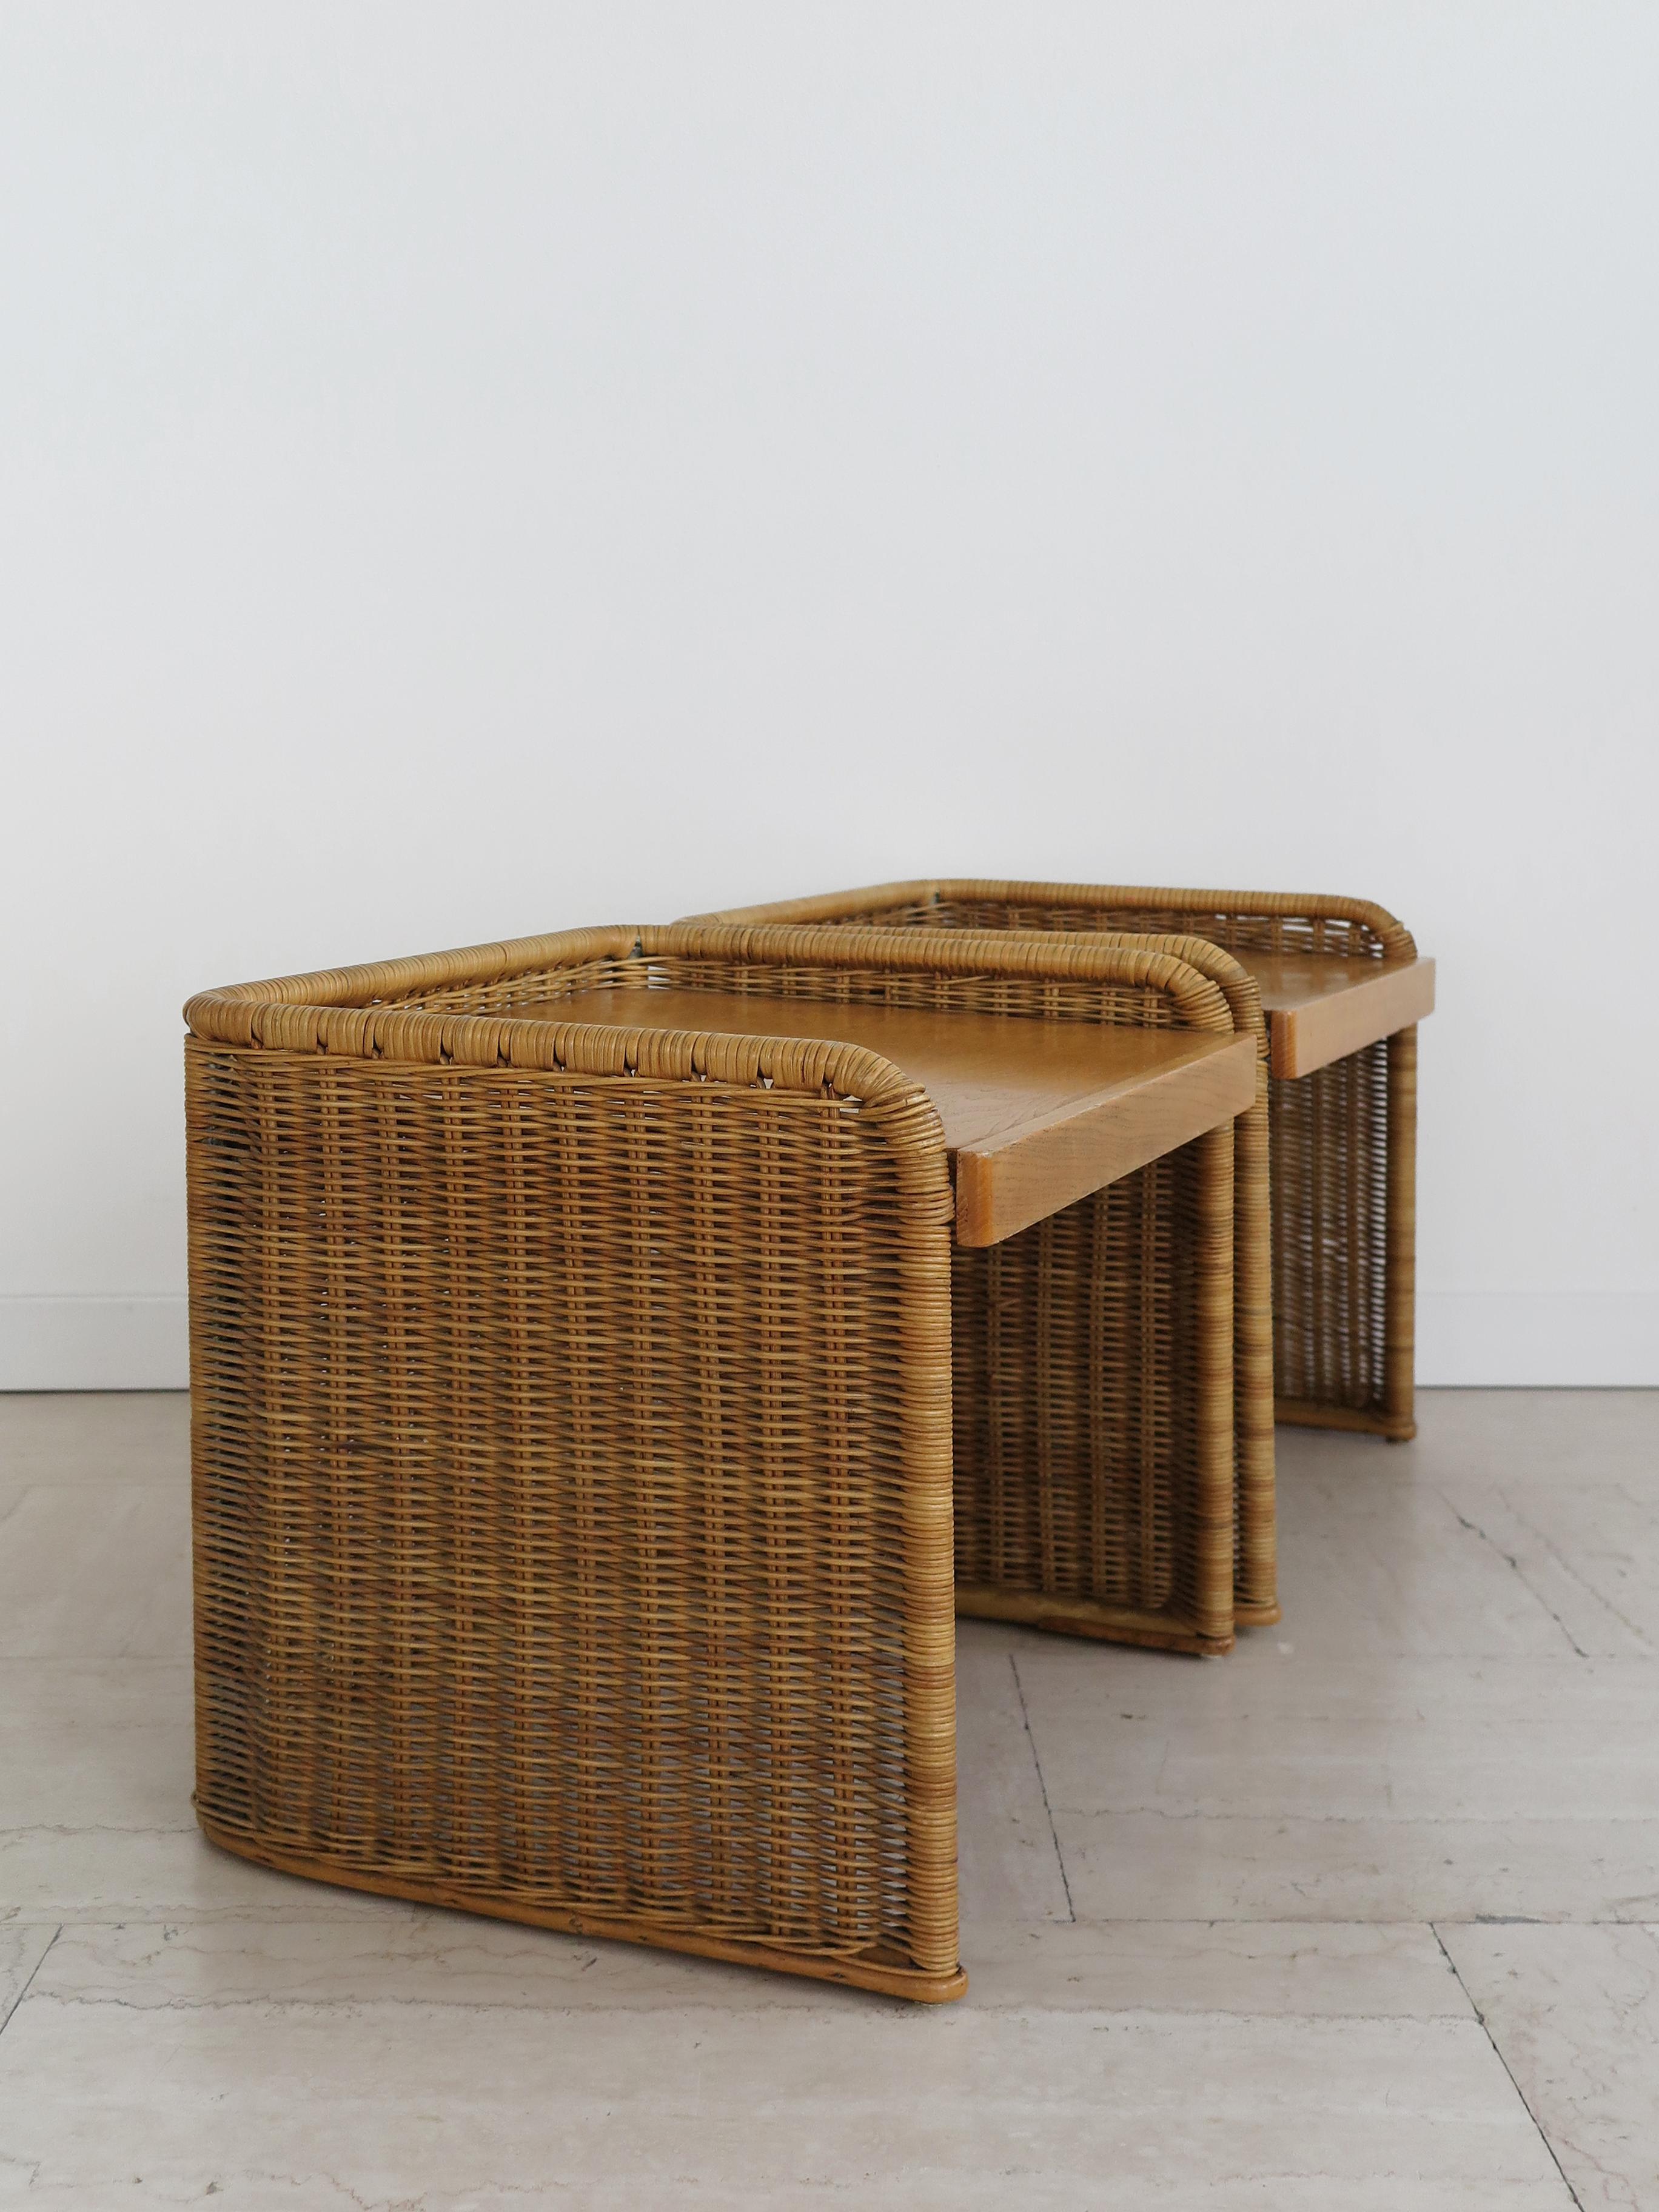 Italienisch Mitte des Jahrhunderts modernes Design Rattan Bambus Nachttisch Nachttische mit Holzregal, Italien 1950er Jahre

Bitte beachten Sie, dass es sich bei dem Artikel um ein Original aus der damaligen Zeit handelt, das normale Alters- und